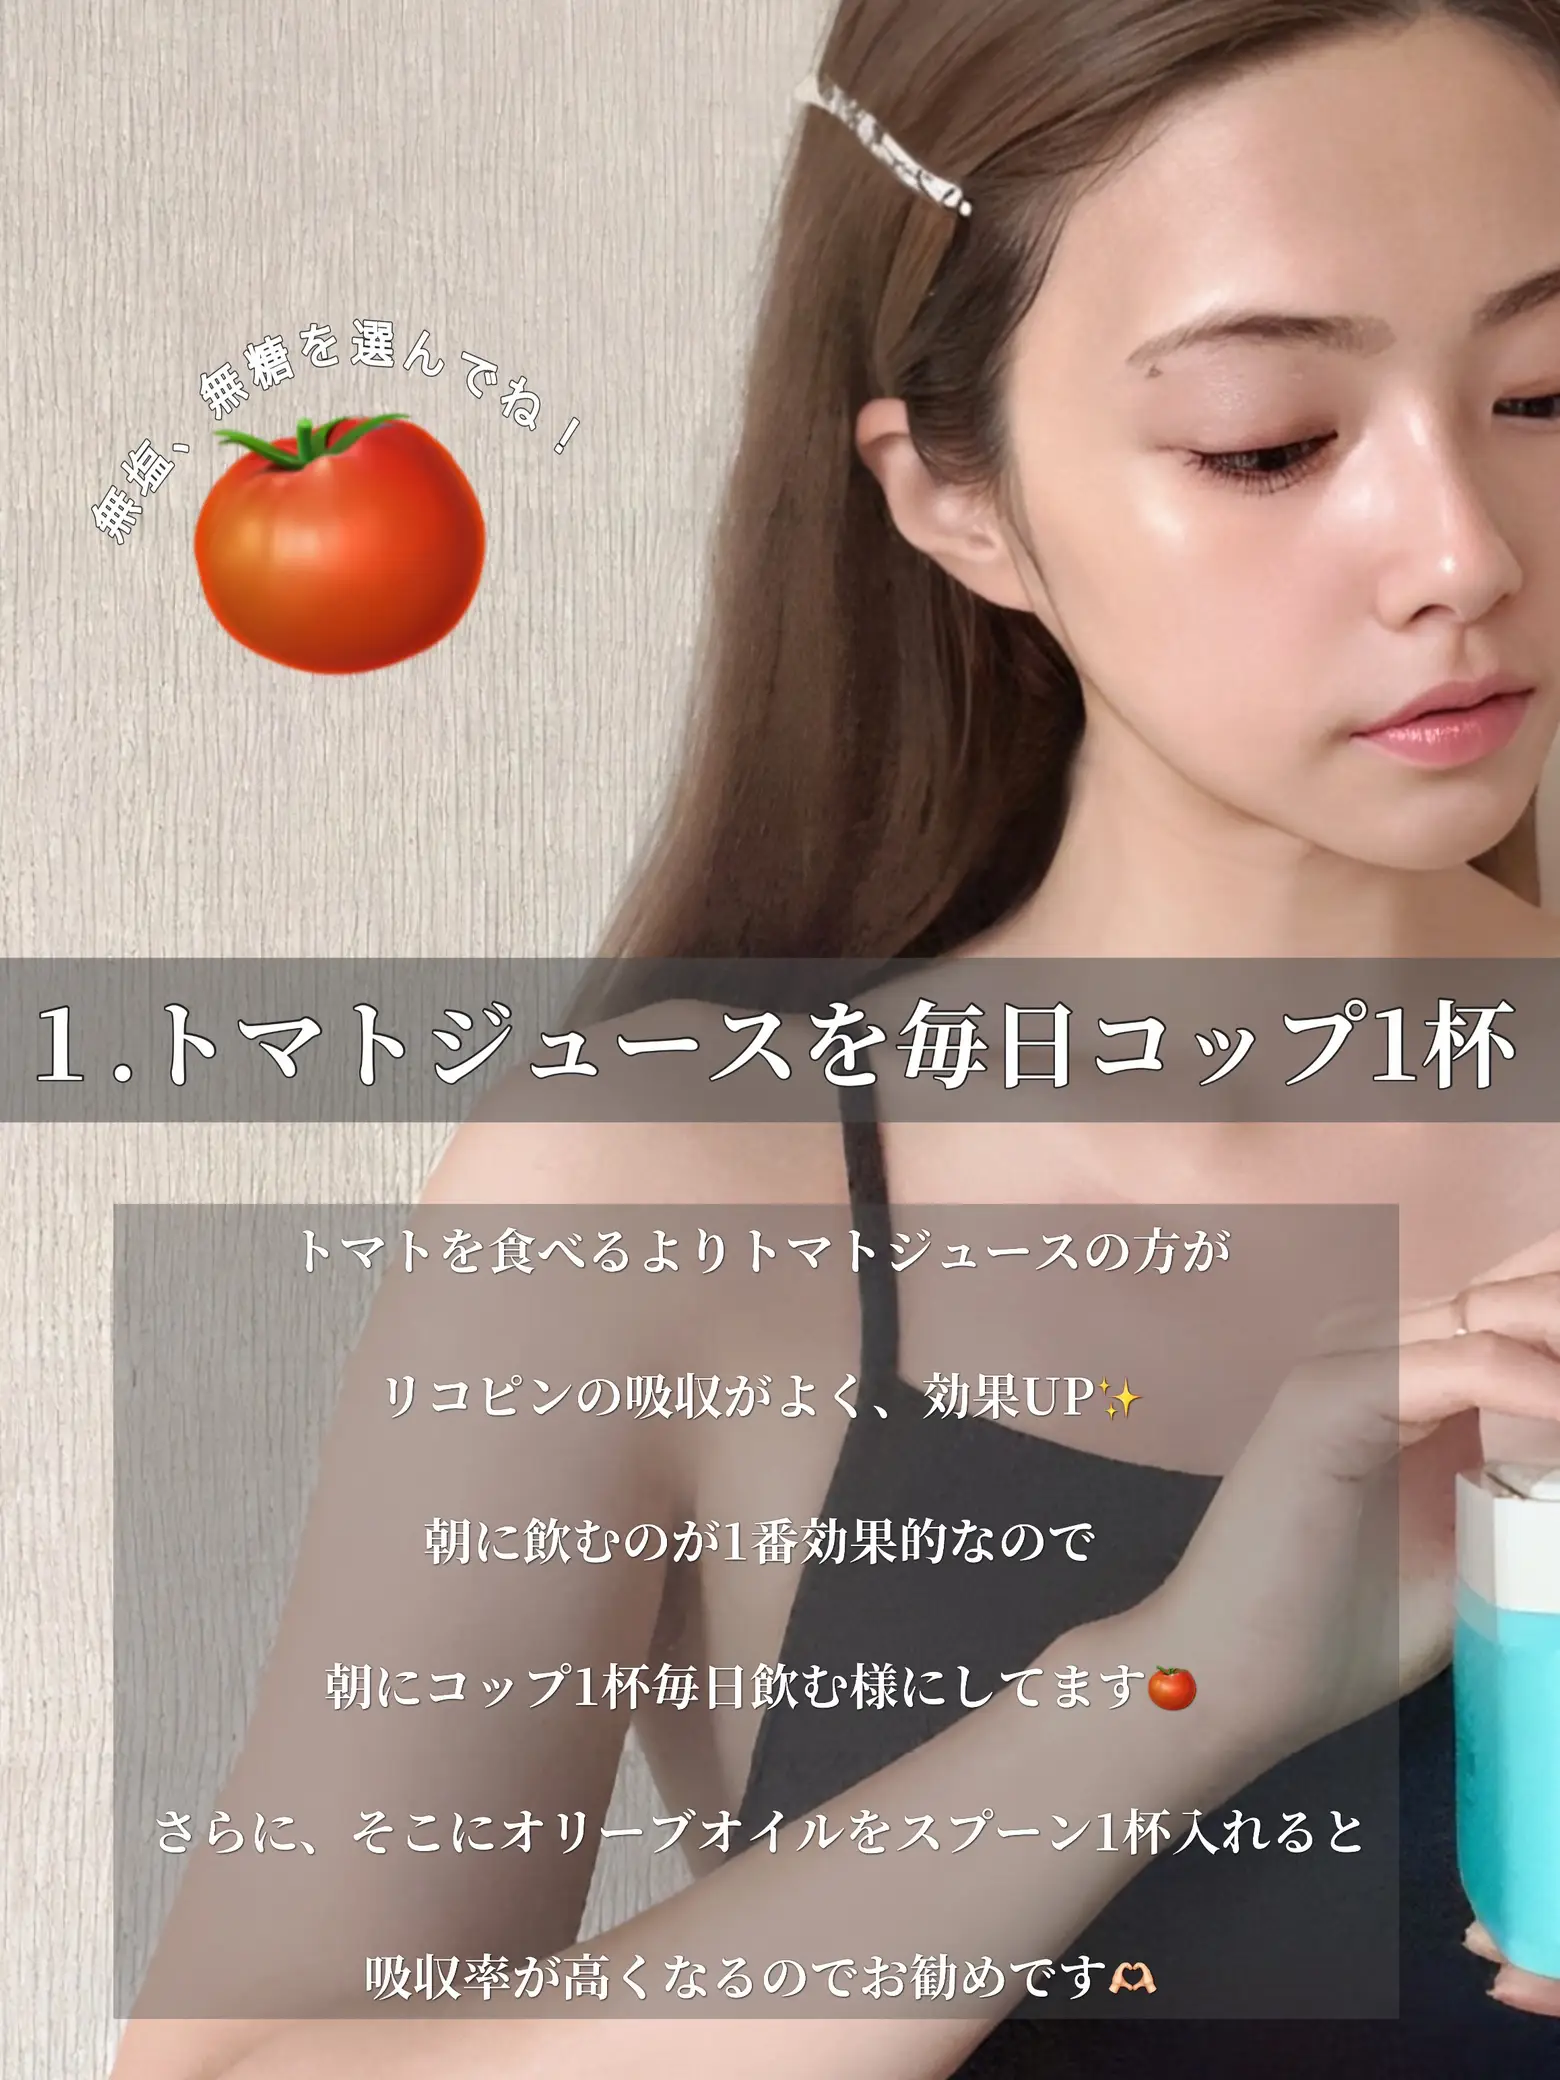 トマトジュース美白 - Lemon8検索